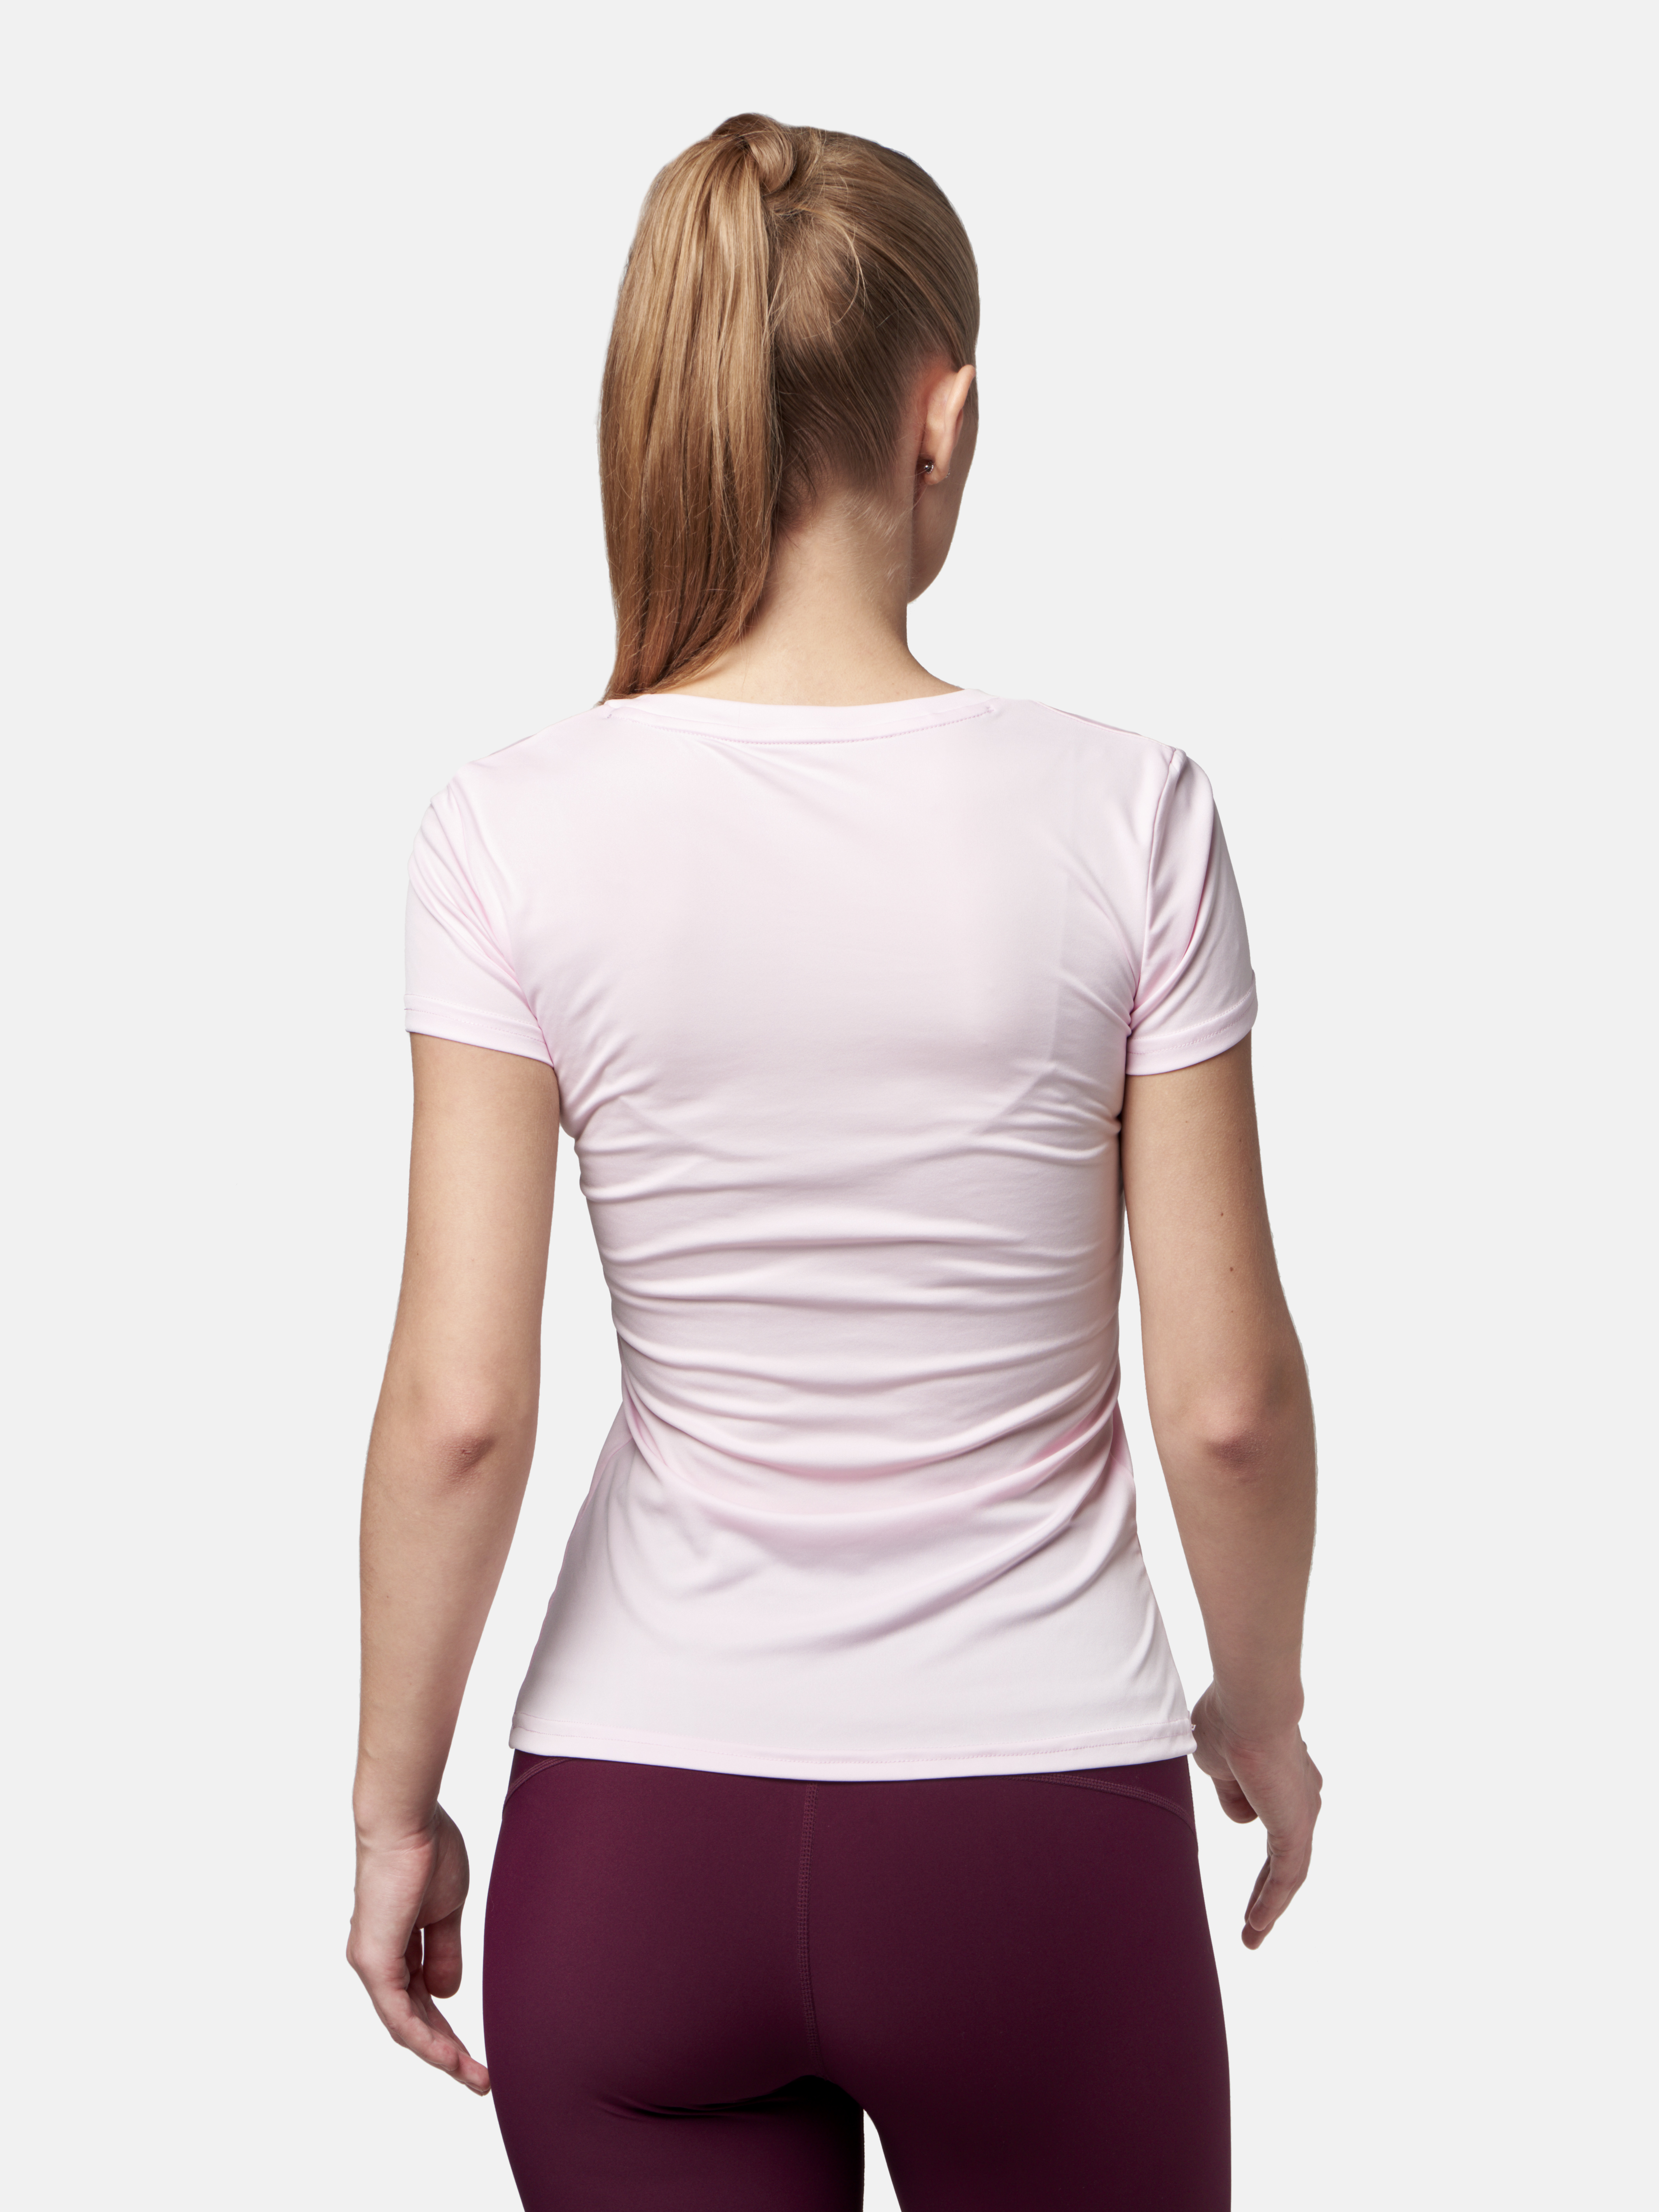 Peresvit Womens Core Training T-shirt Pink Print, Фото № 2